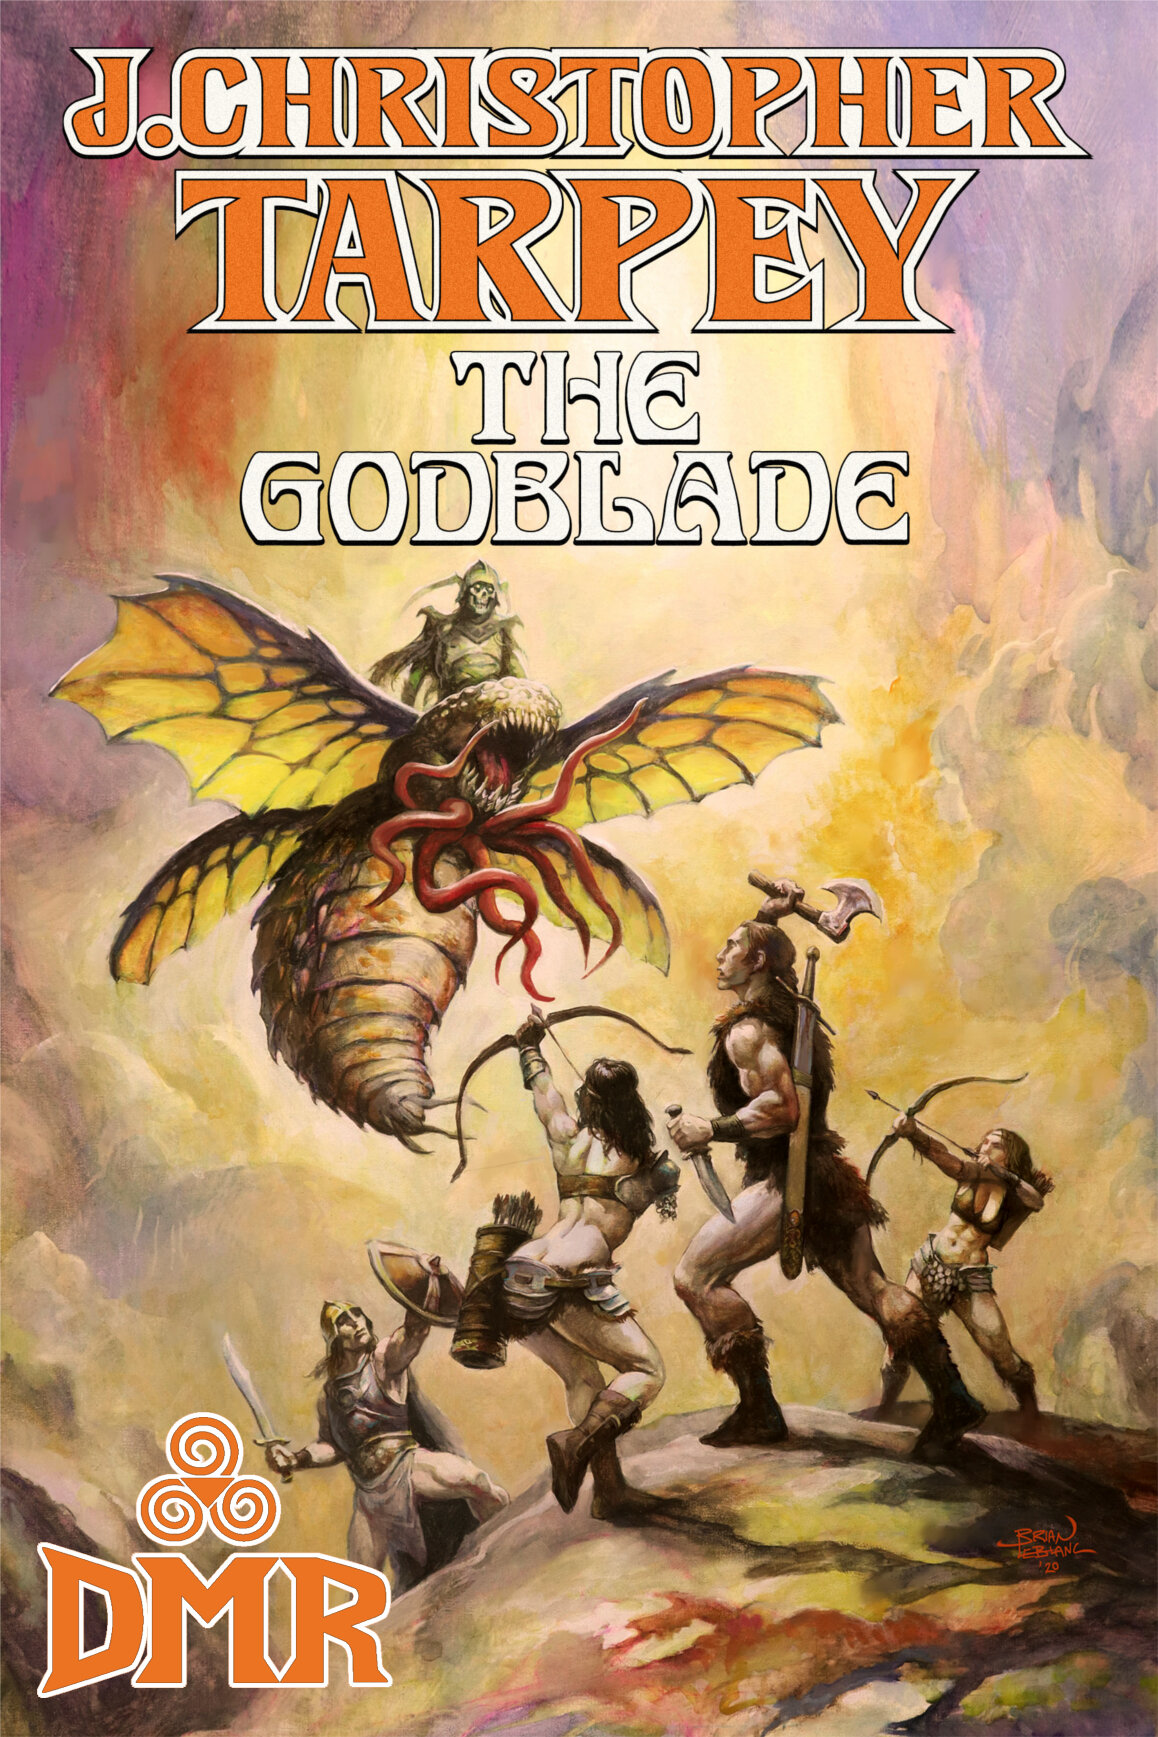 The Godblade